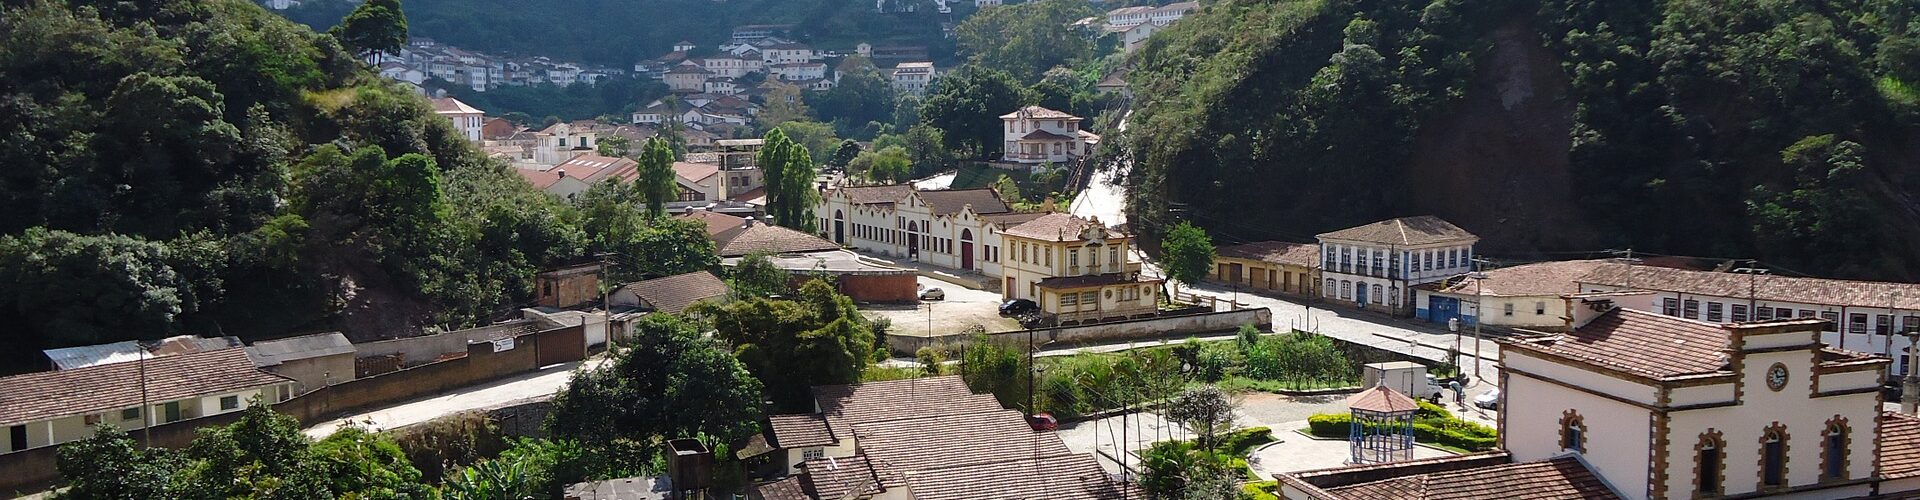 Brazil - Minas Gerais - Colonial Ouro Preto